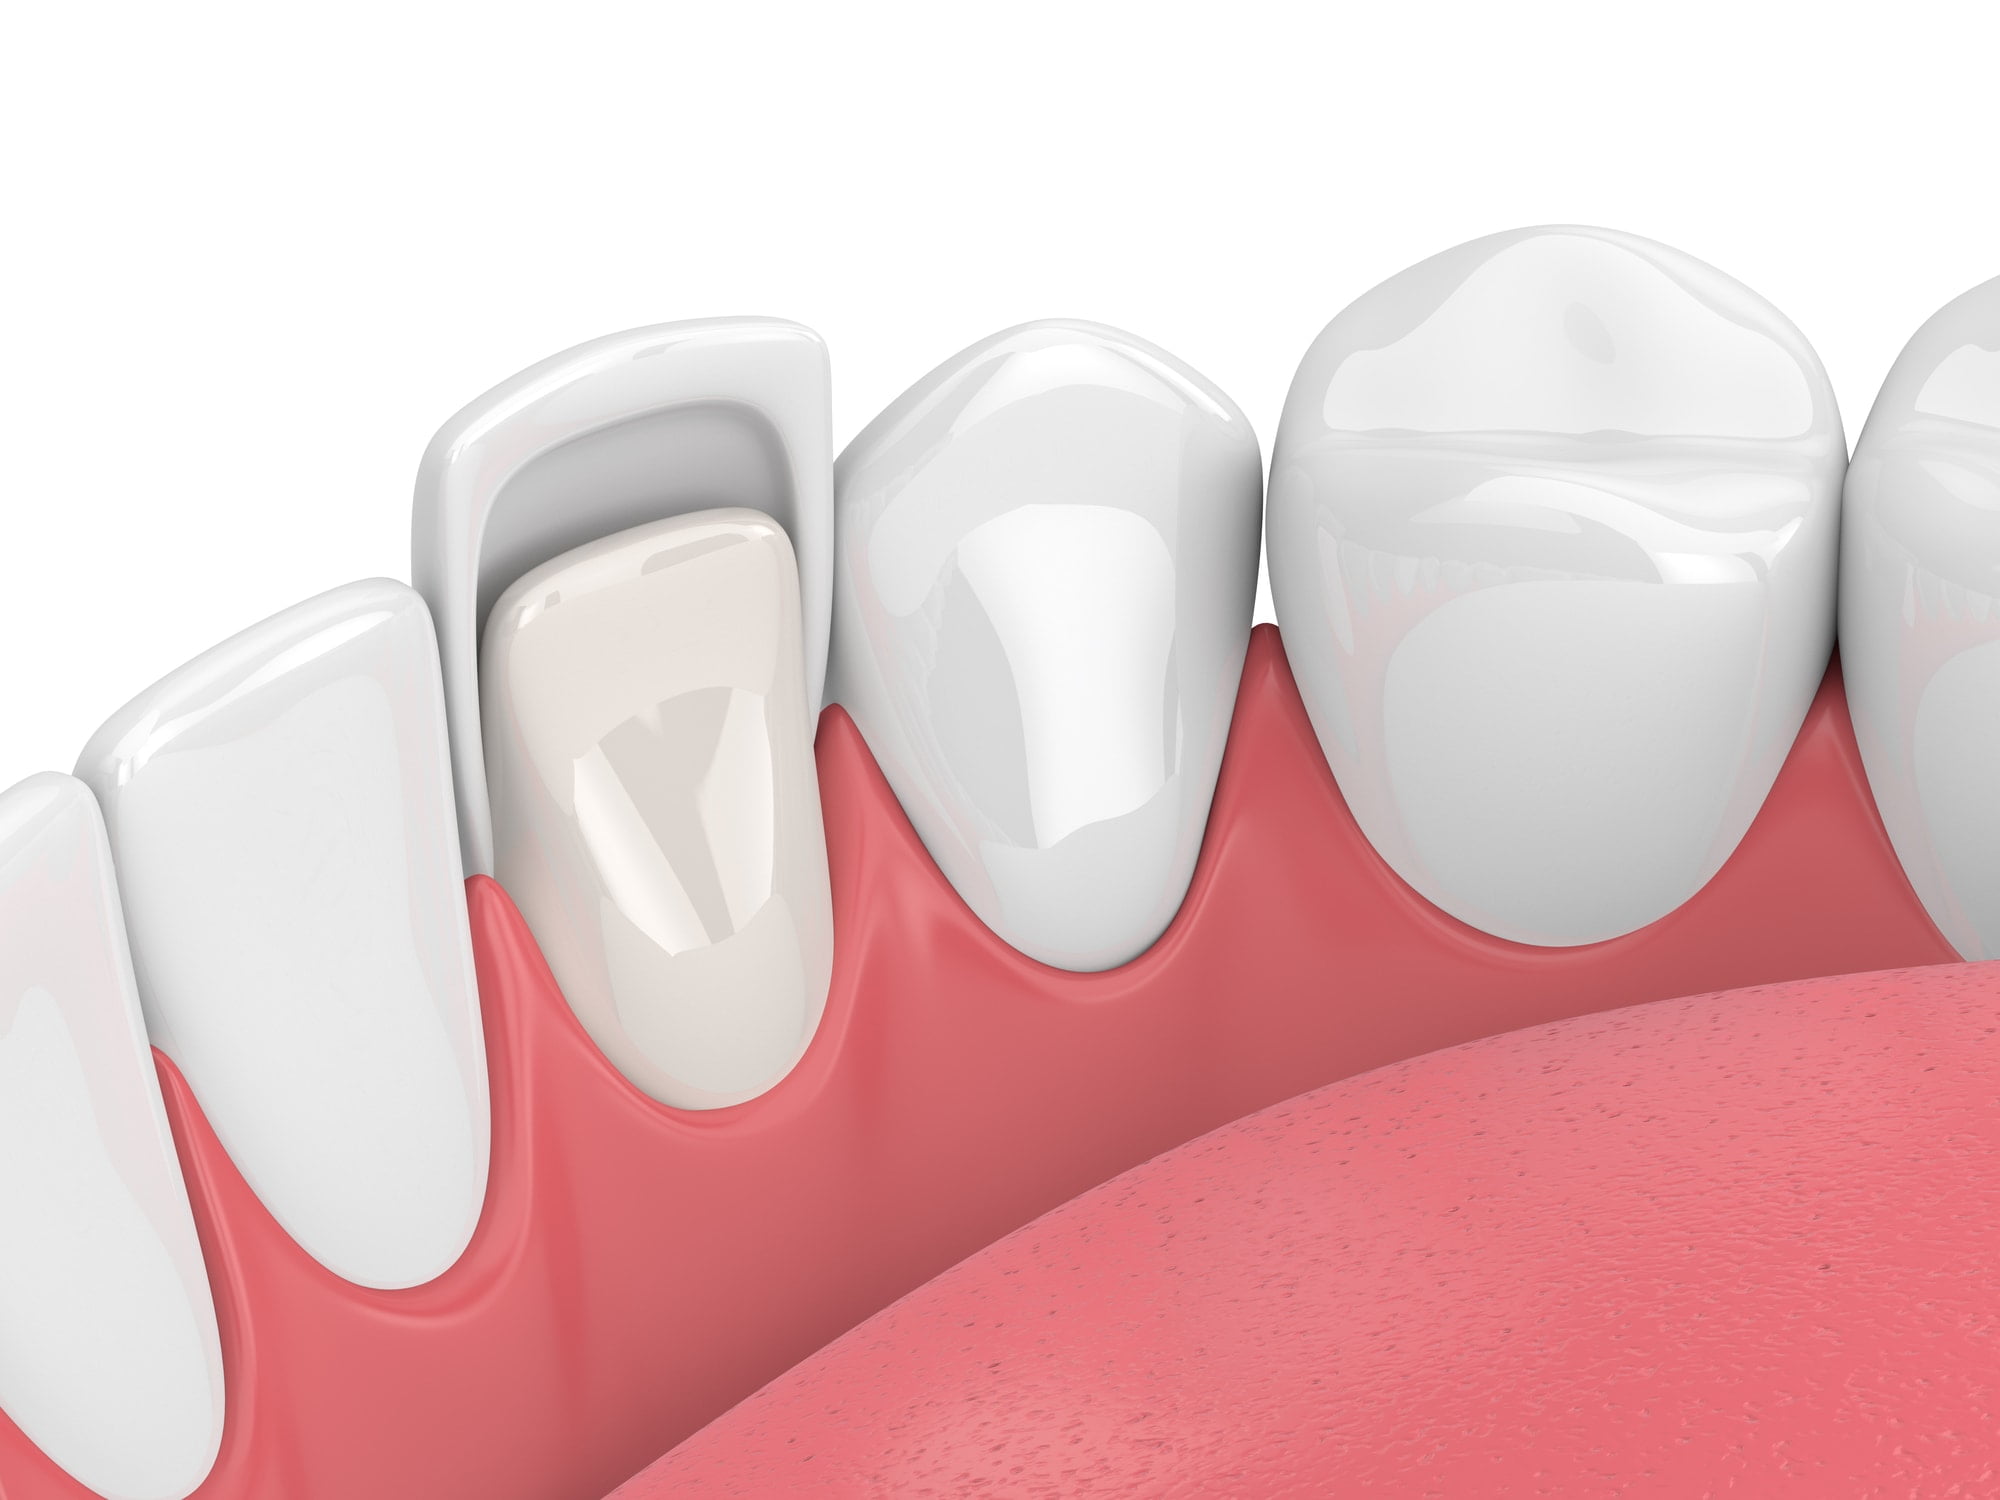 3d render of teeth with veneer over white